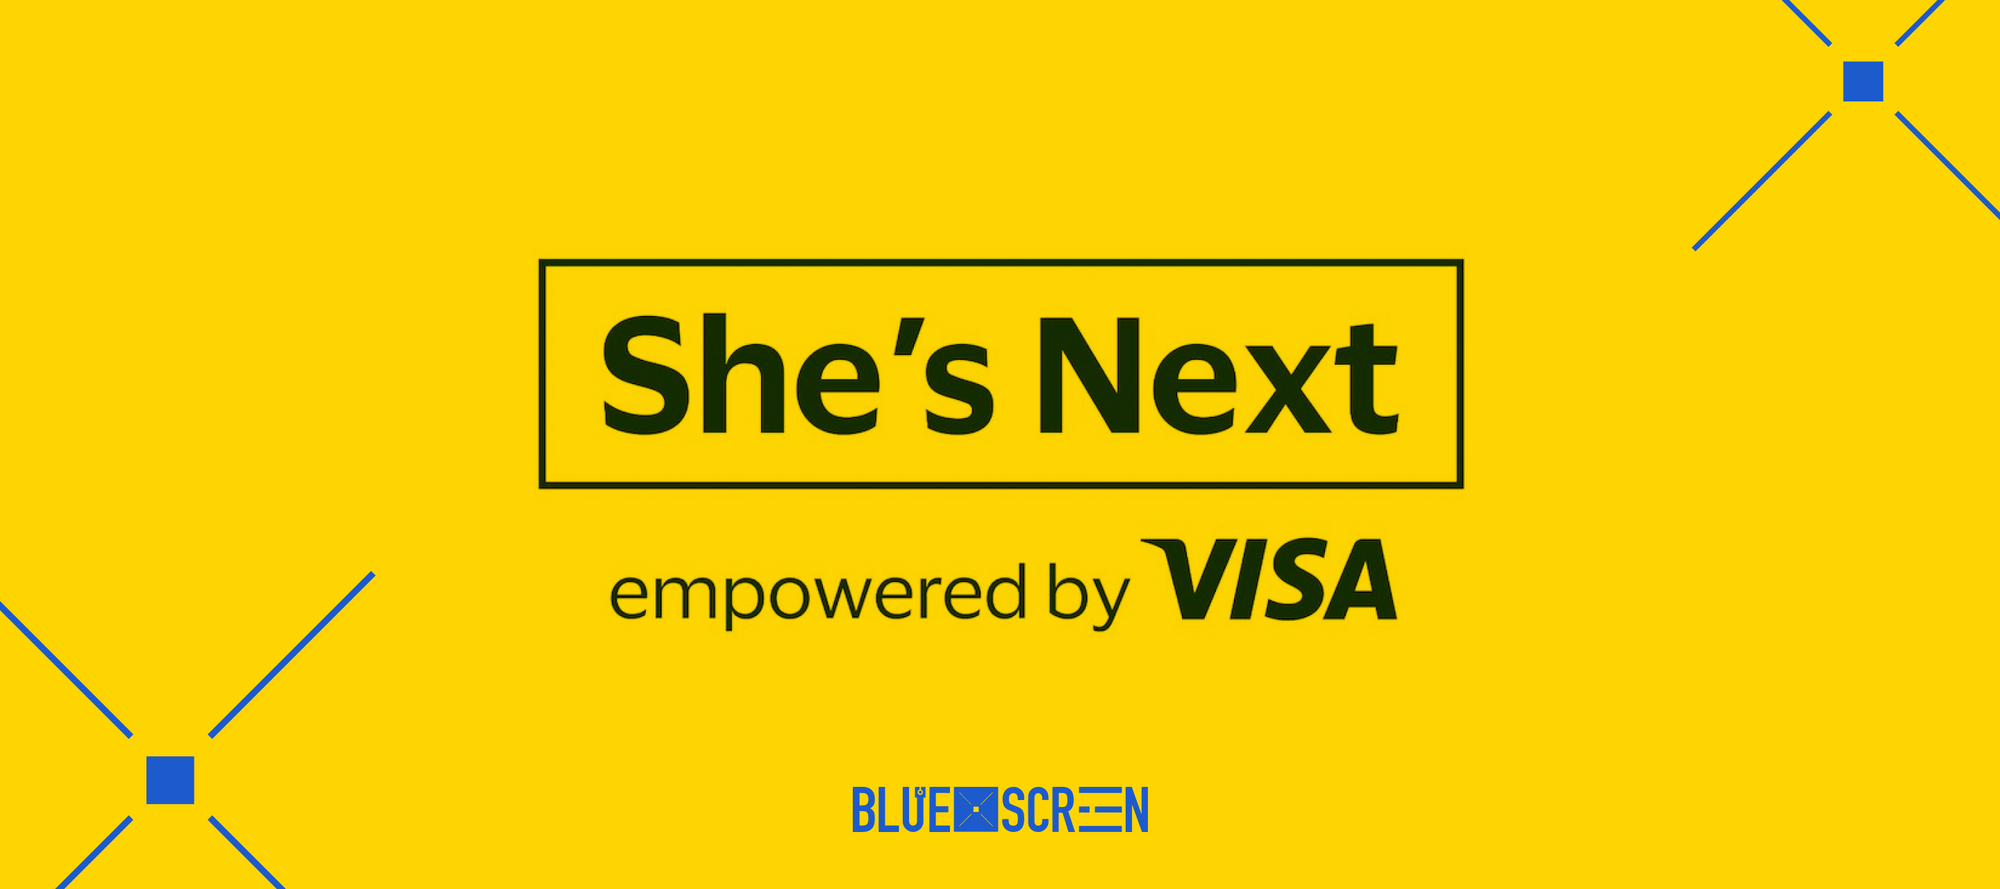 She’s Next: платформа цифрового комьюнити для предпринимательниц